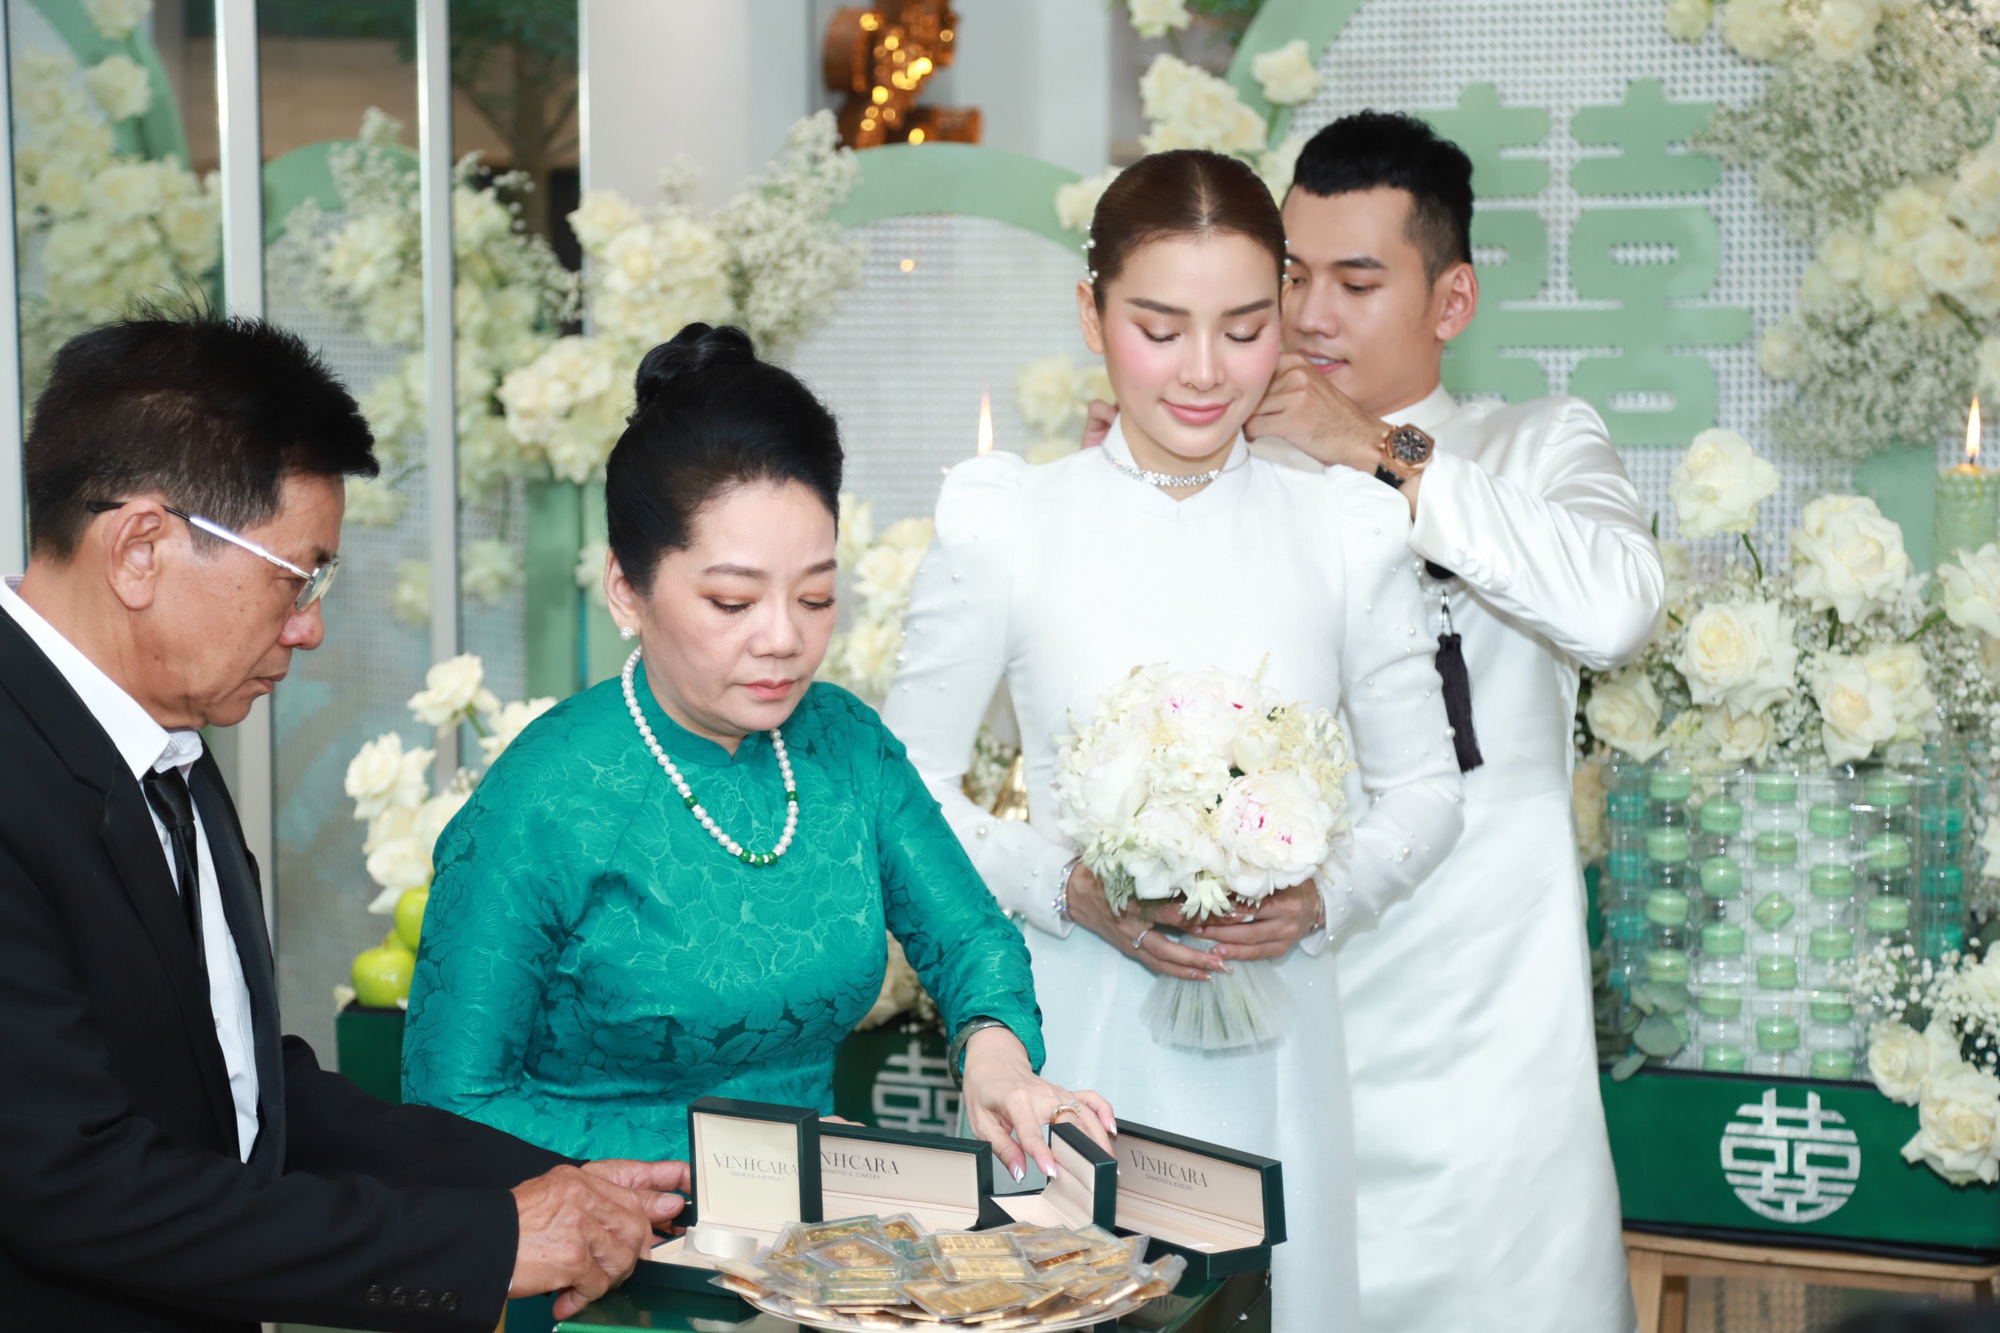 Lễ rước dâu Phương Trinh Jolie - Lý Bình: Cô dâu xúc động bật khóc, chú rể mang sính lễ hơn 100 cây vàng và trang sức 2 tỷ đồng - Ảnh 20.